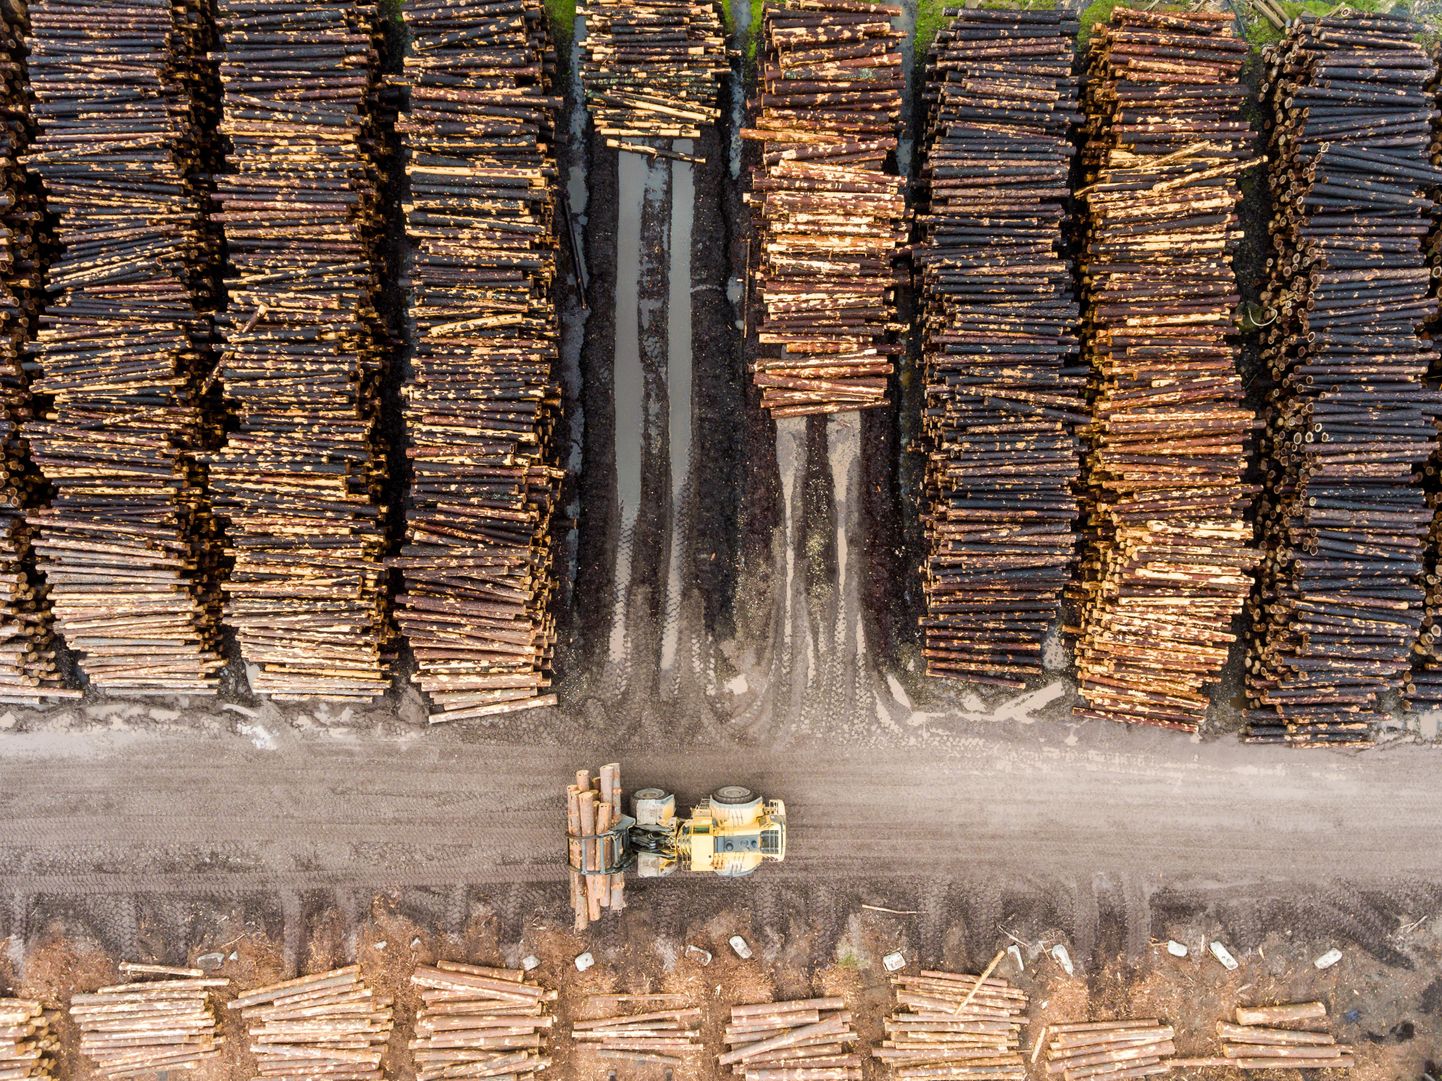 Virnastatud metsamaterjal Toftani puidutööstuses. Foto on illustratiivne.